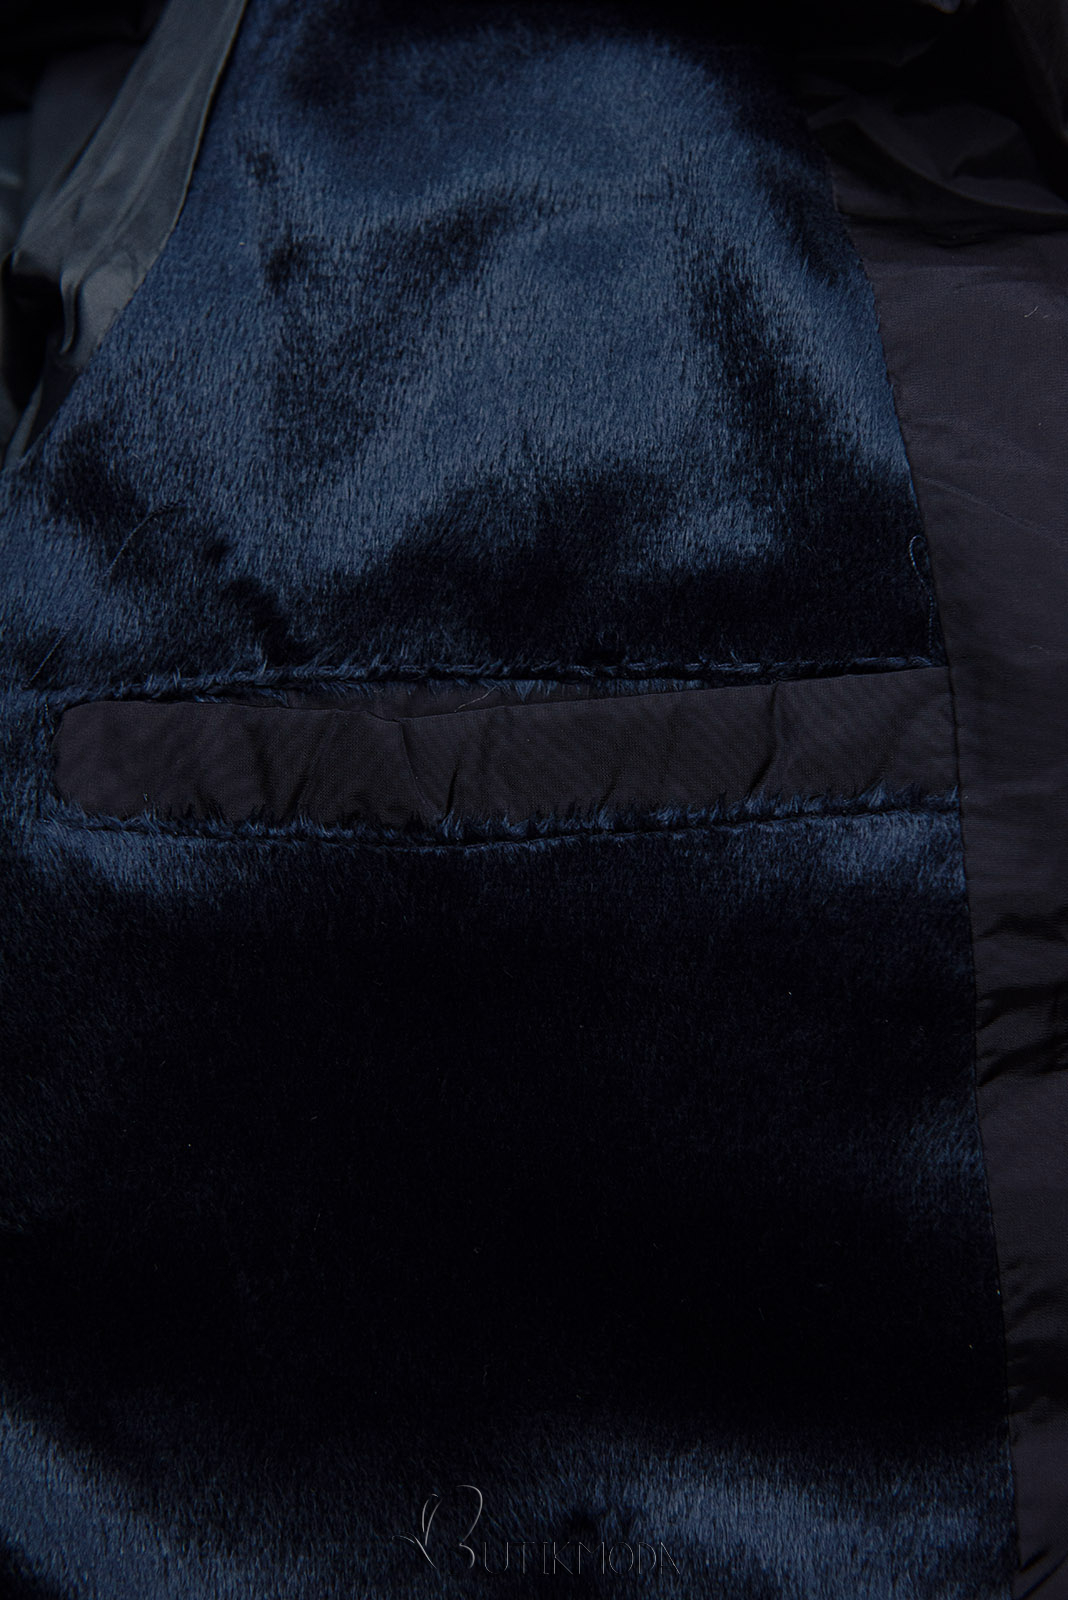 Dark blue winter jacket in quilted design